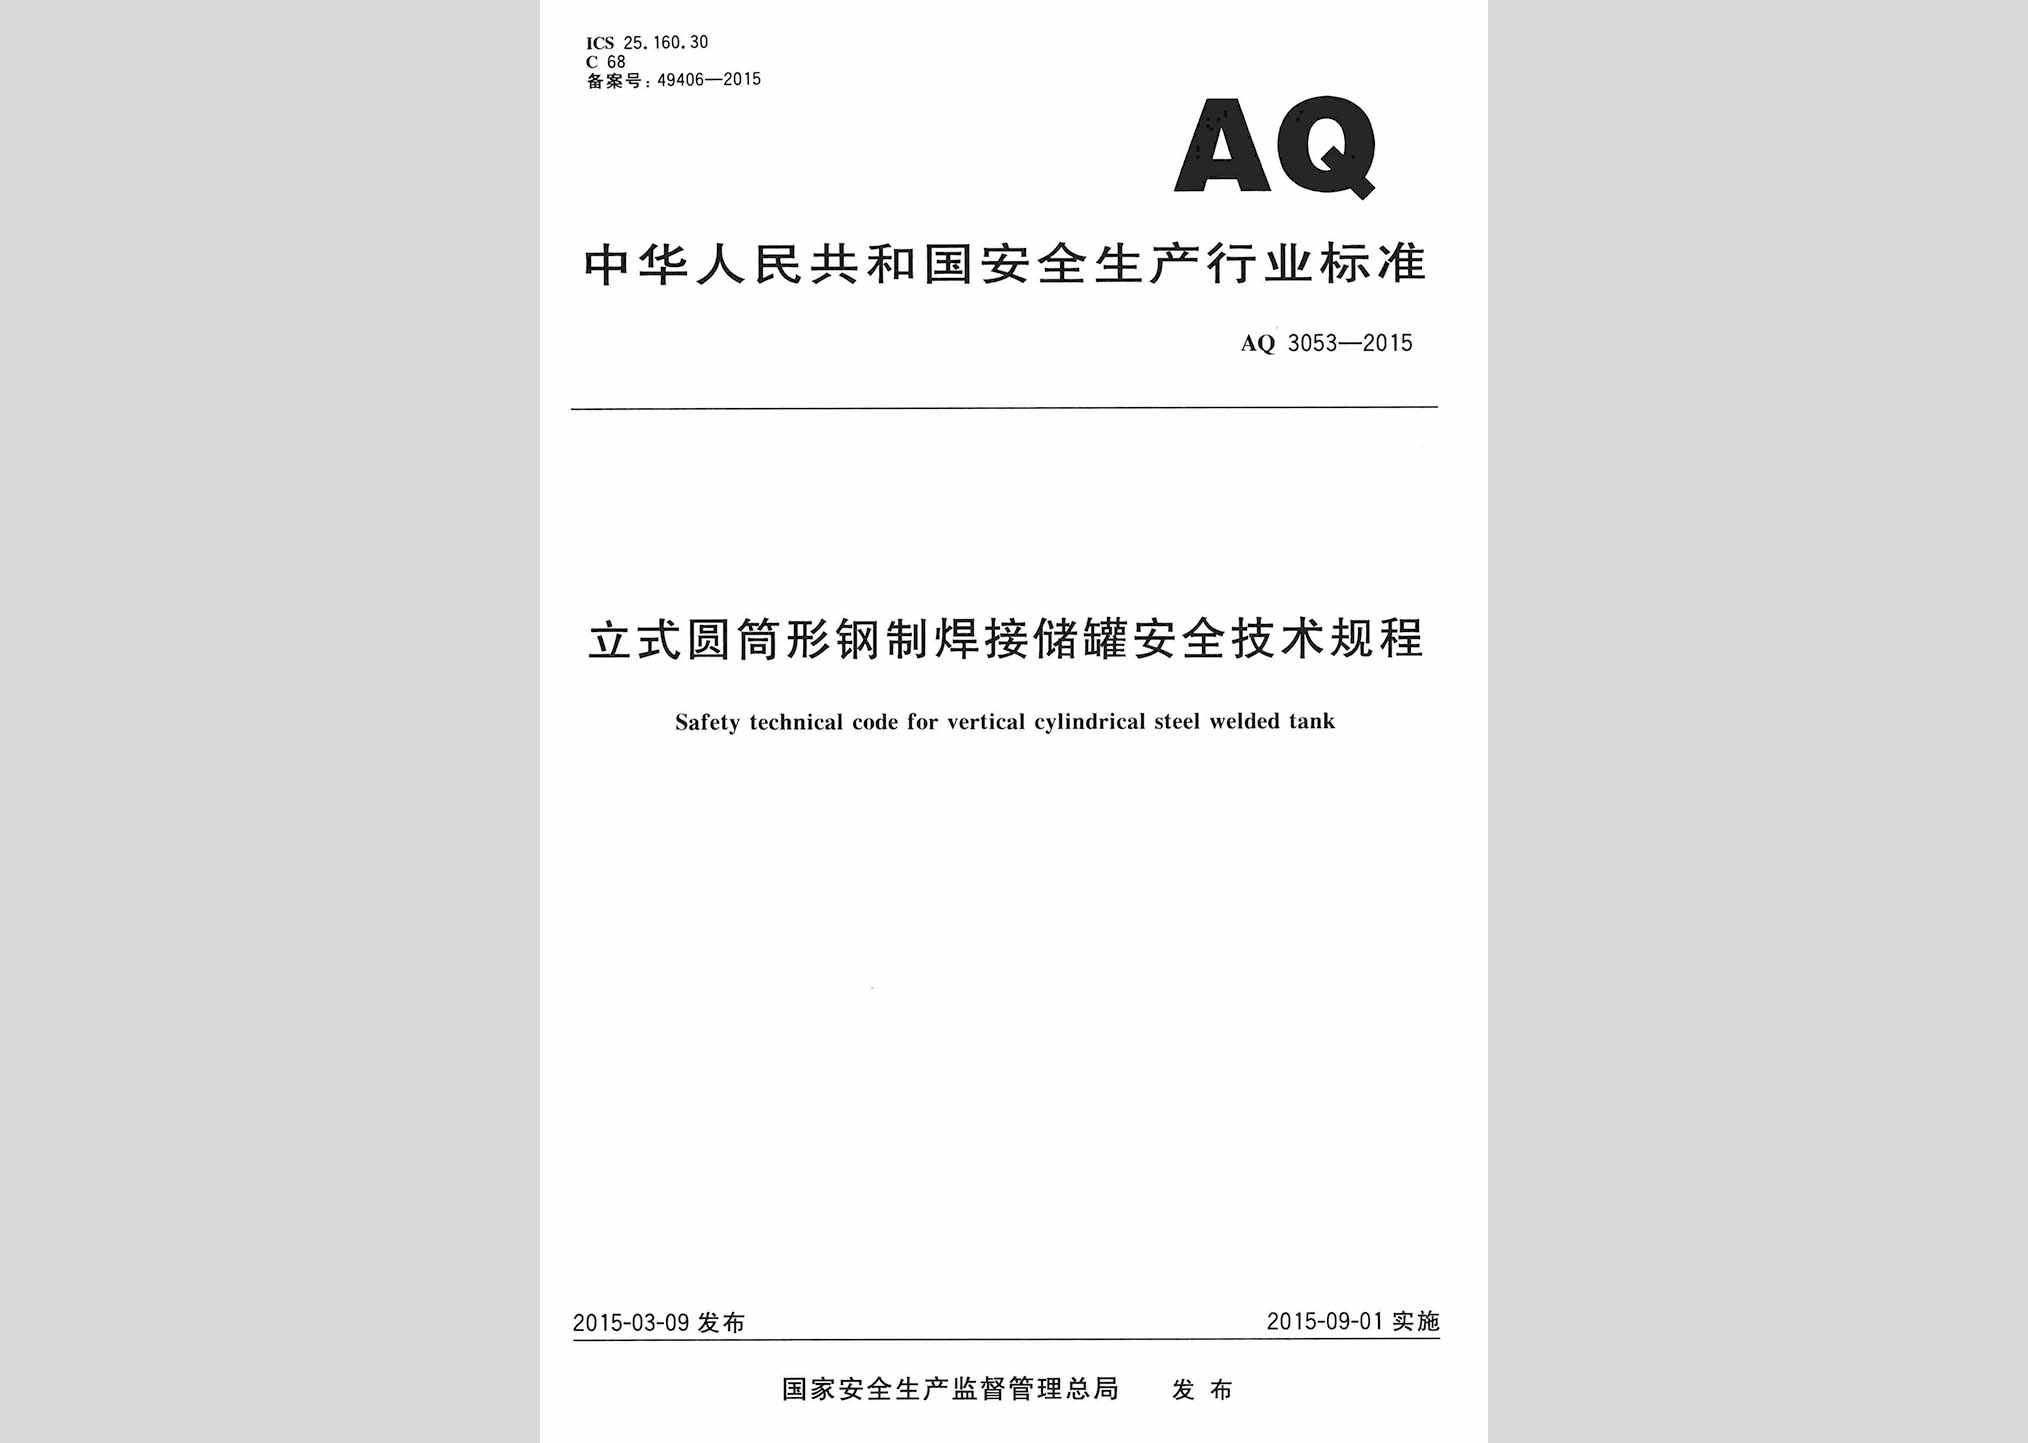 AQ3053-2015：立式圆筒形钢制焊接储罐安全技术规程